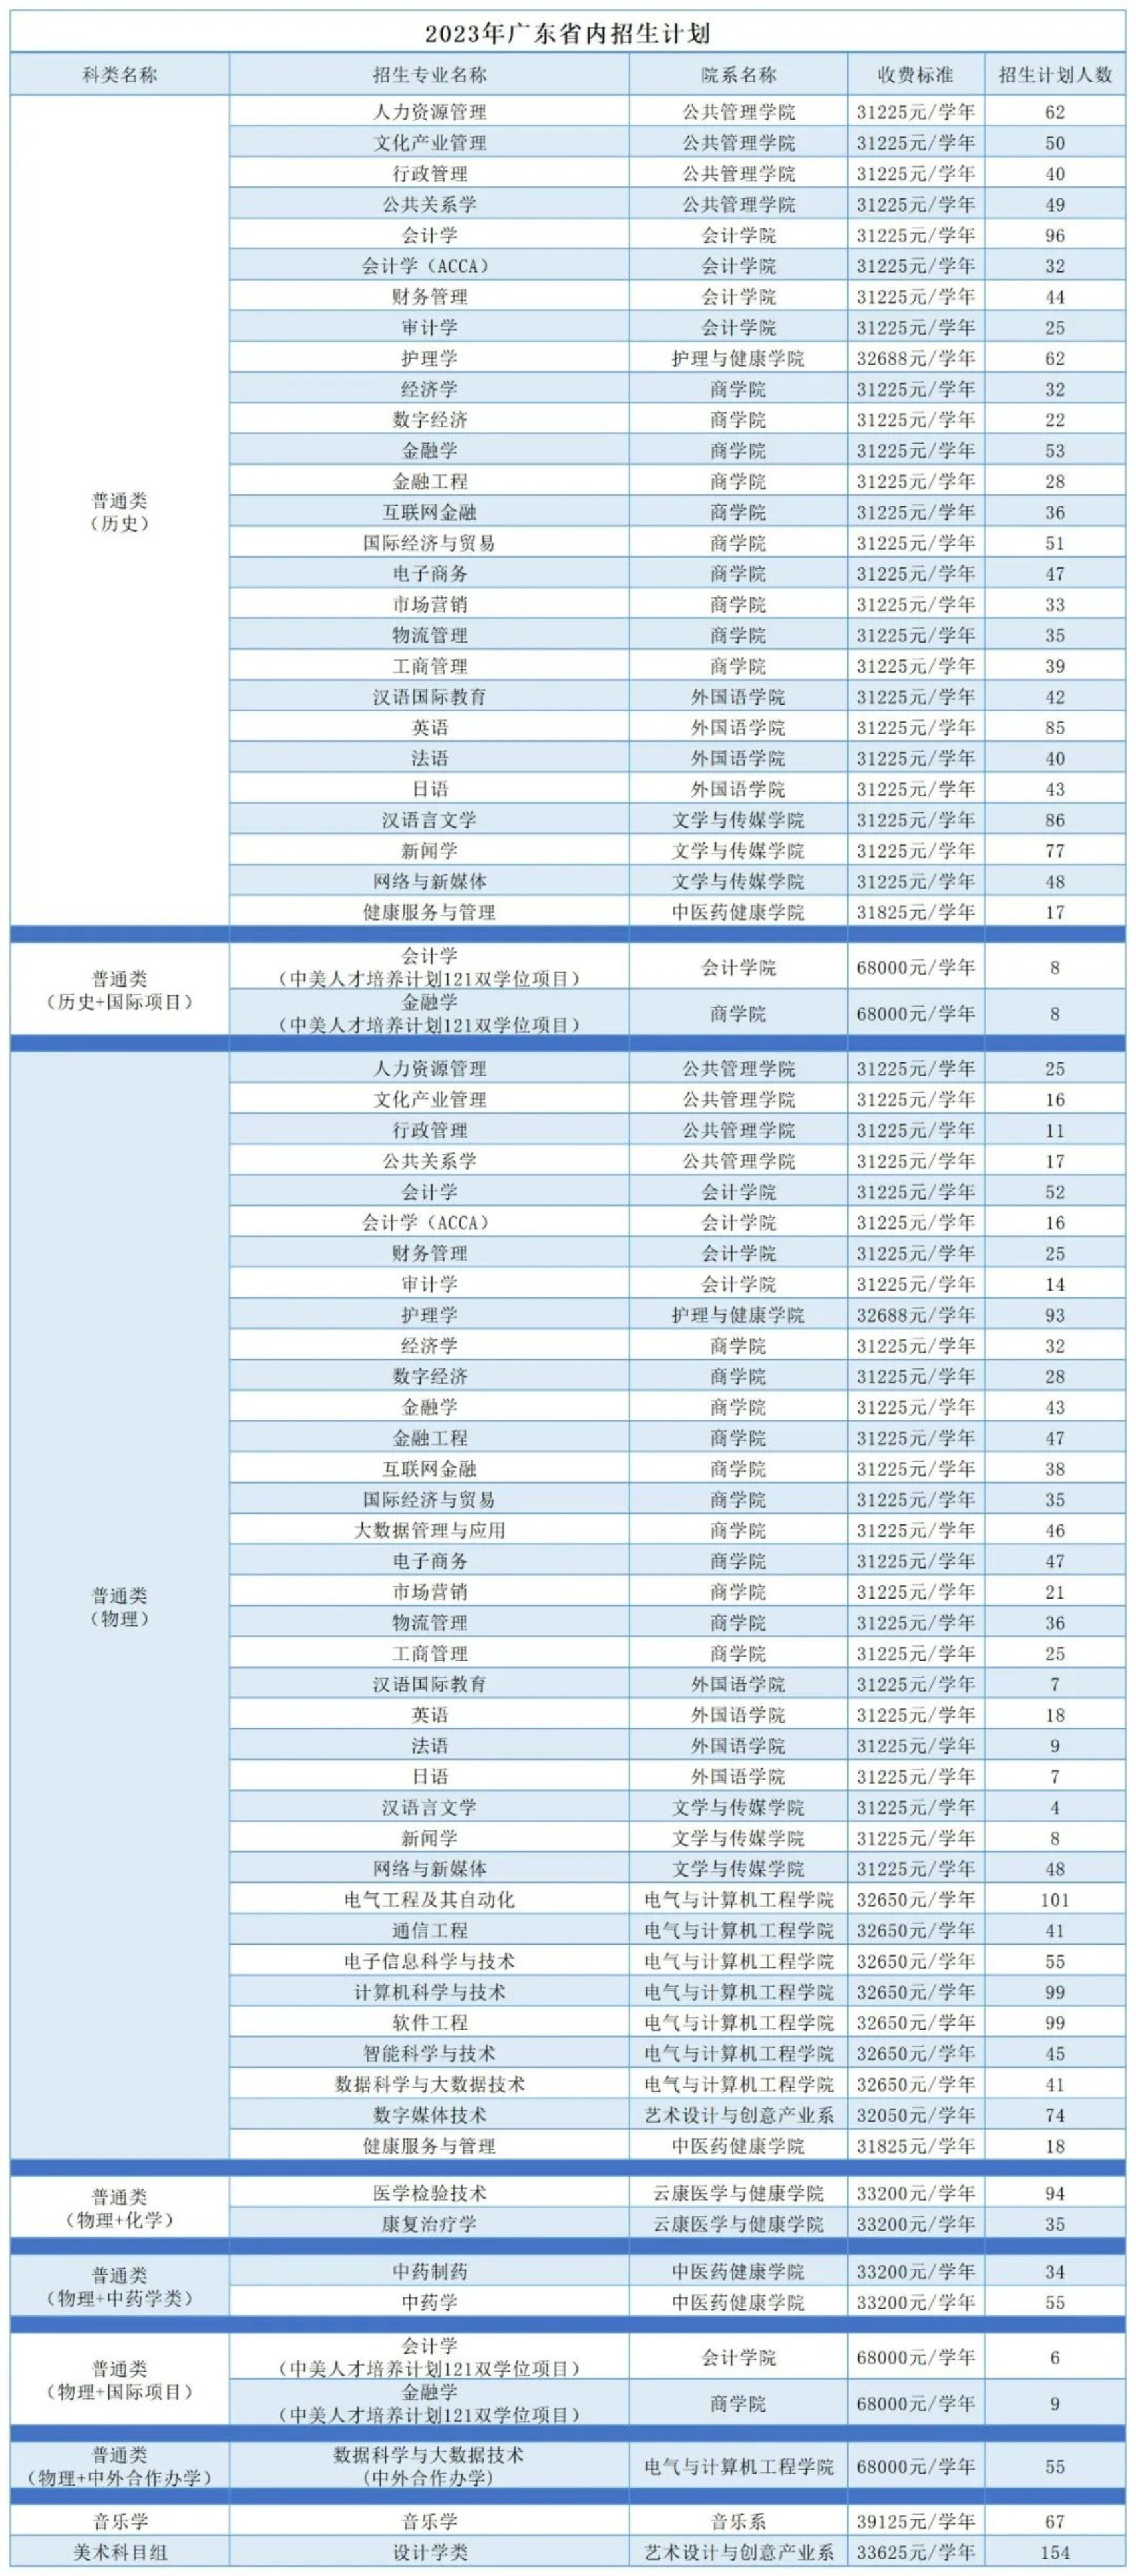 广州南方学院2023年广东省内招生计划